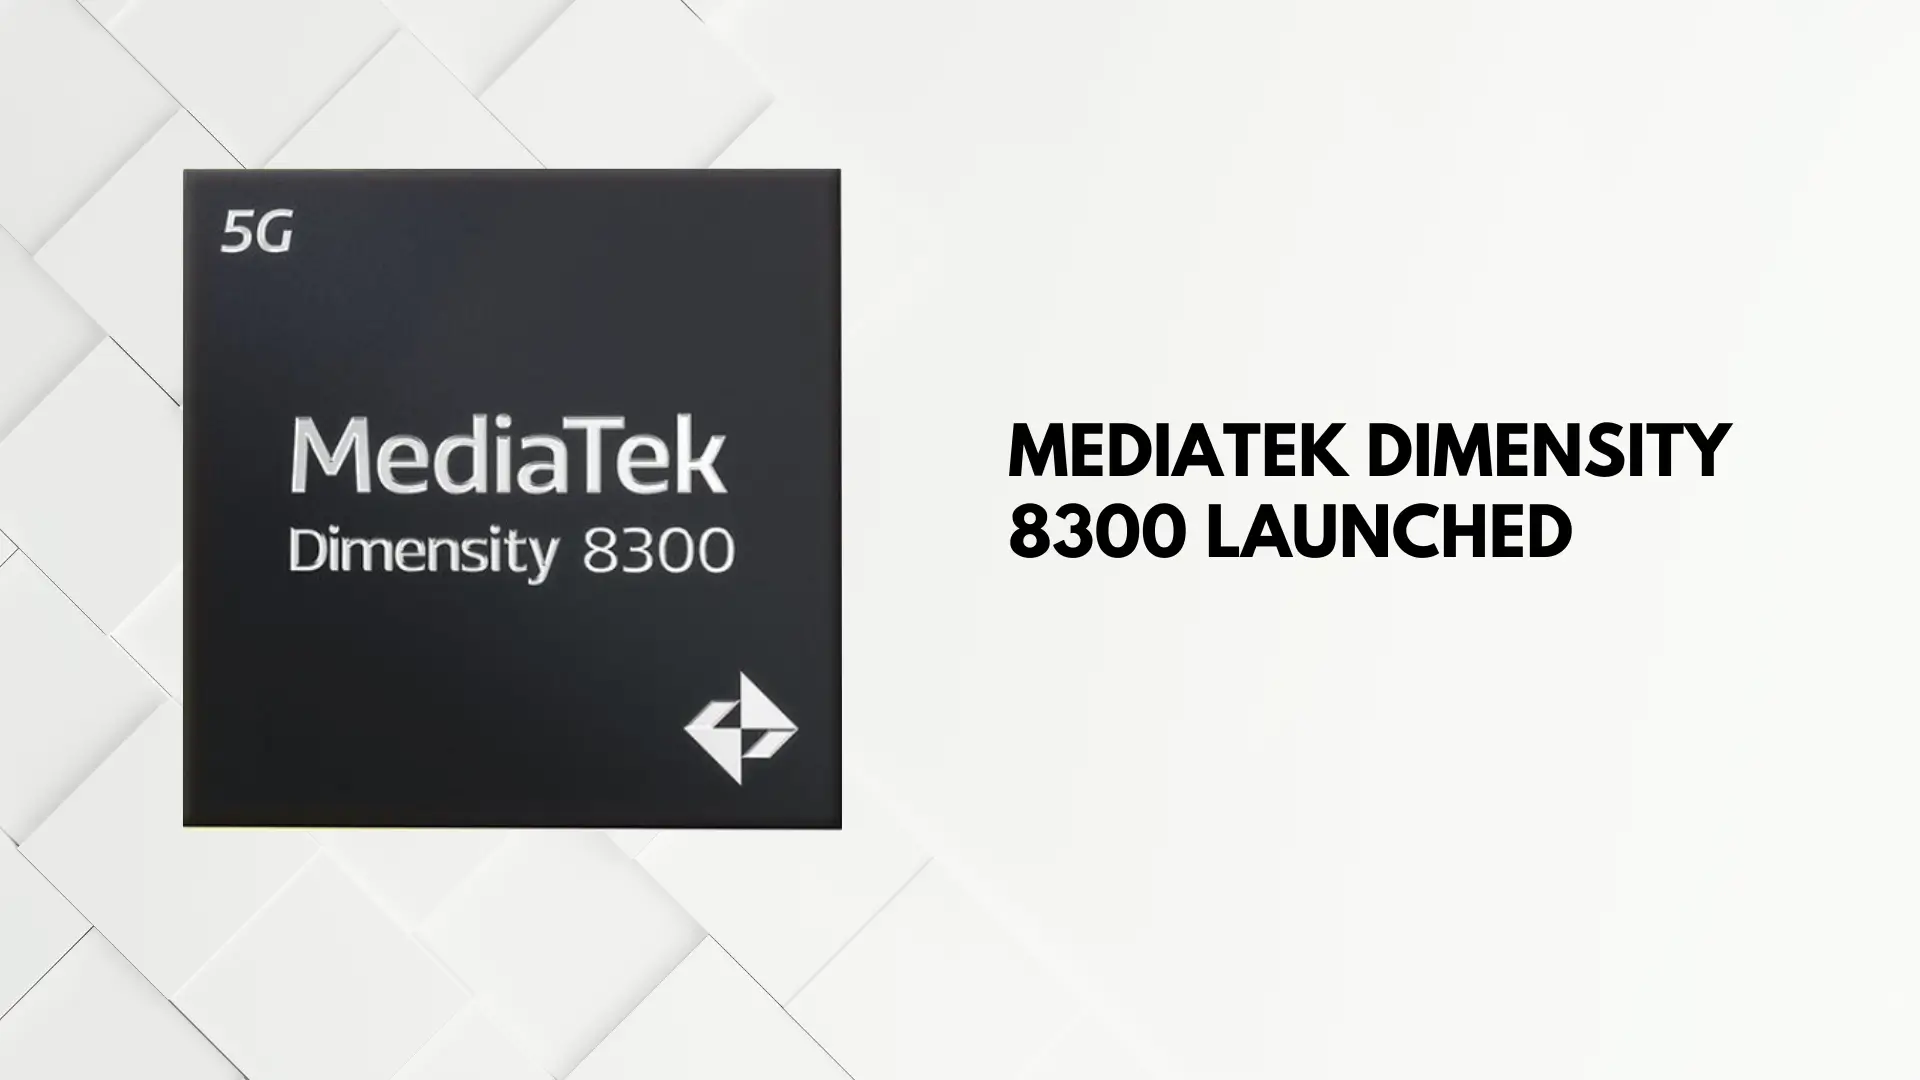 MEdiatek dimensity 8300 launched